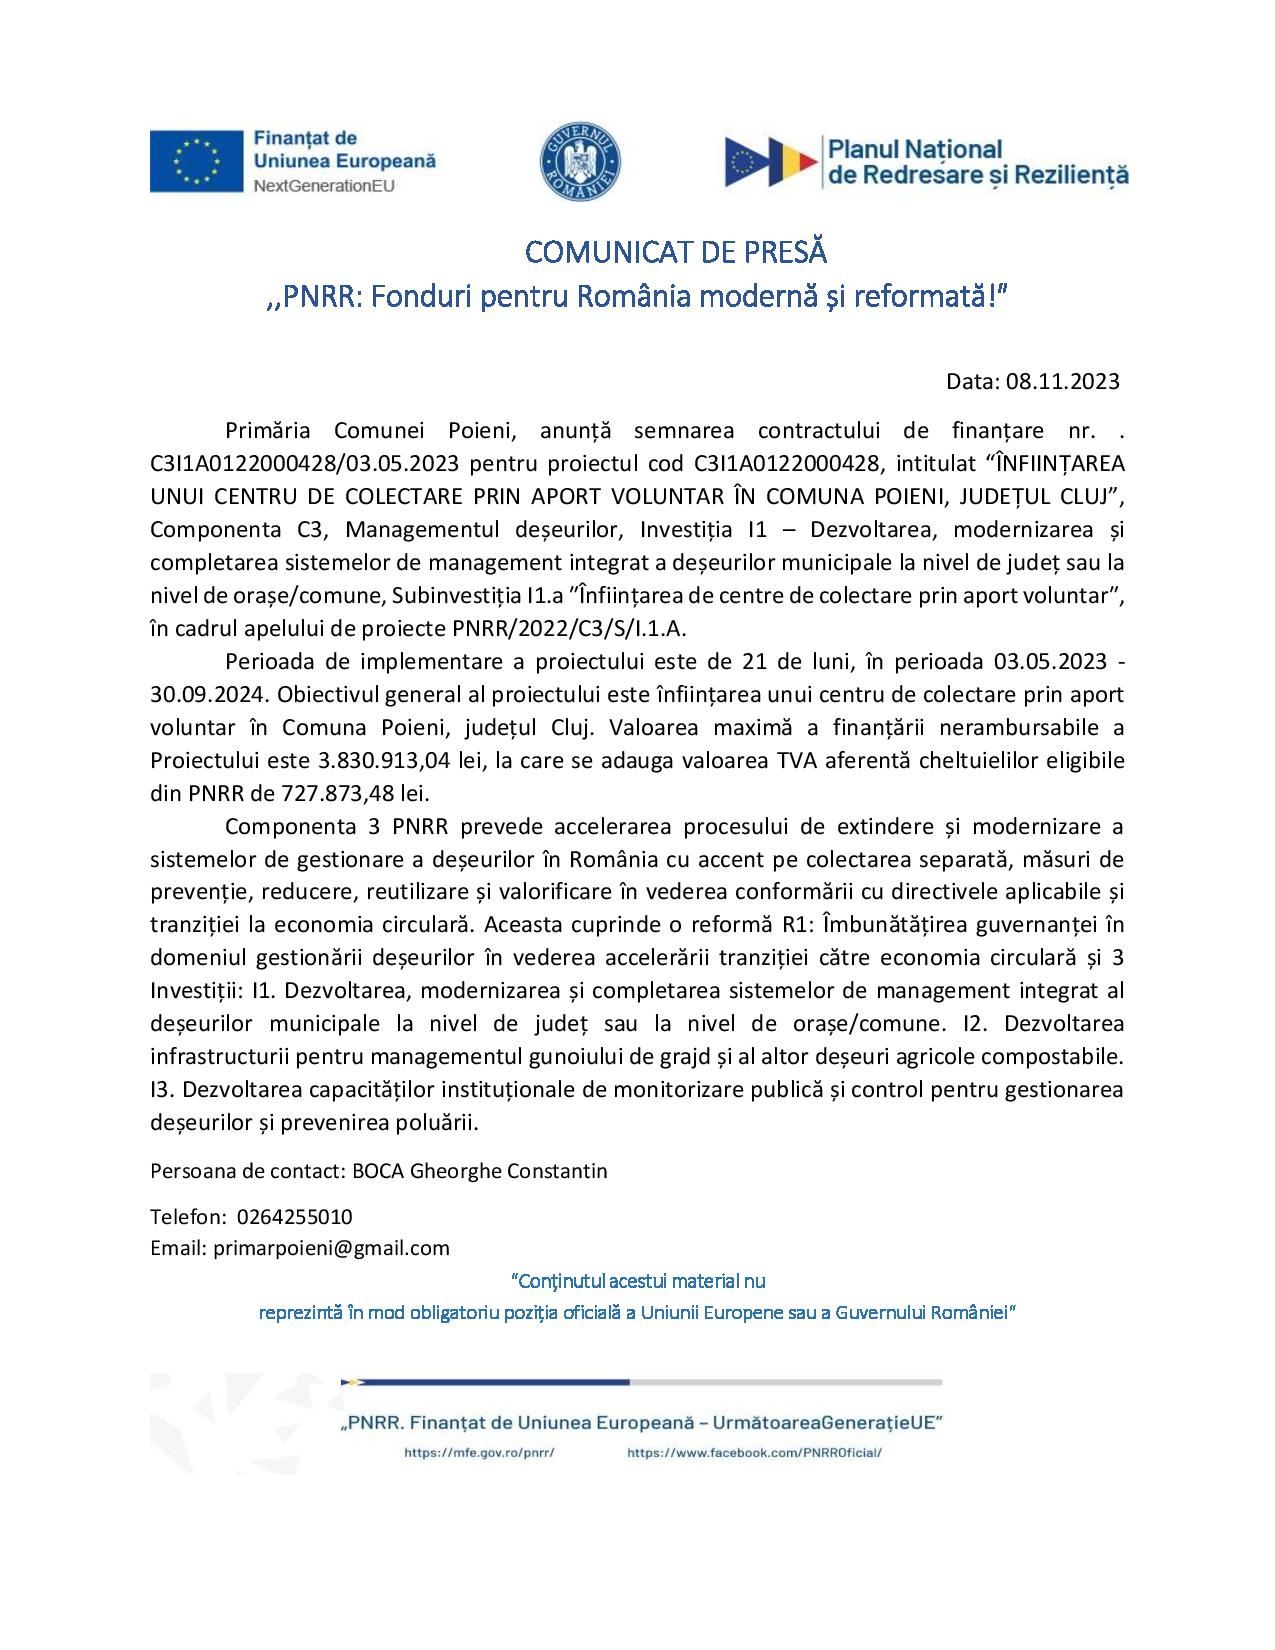 Primăria Poieni - COMUNICAT DE PRESĂ ,,PNRR: Fonduri pentru România modernă și reformată!″